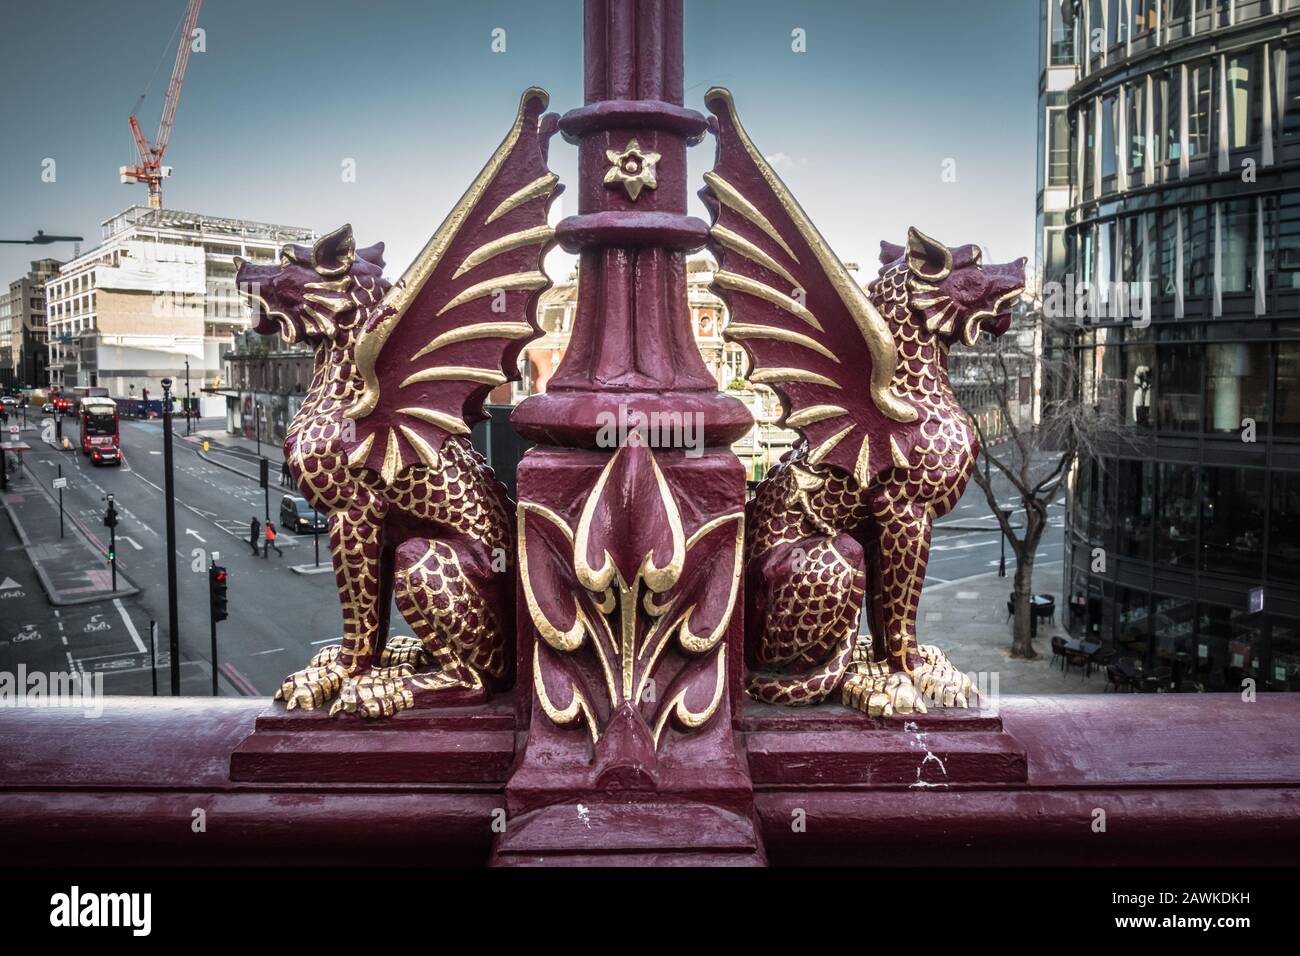 Gros plan des dragons de la ville de Londres sur Holborn Viaduct, Farringdon Street, Londres, Angleterre, Royaume-Uni Banque D'Images